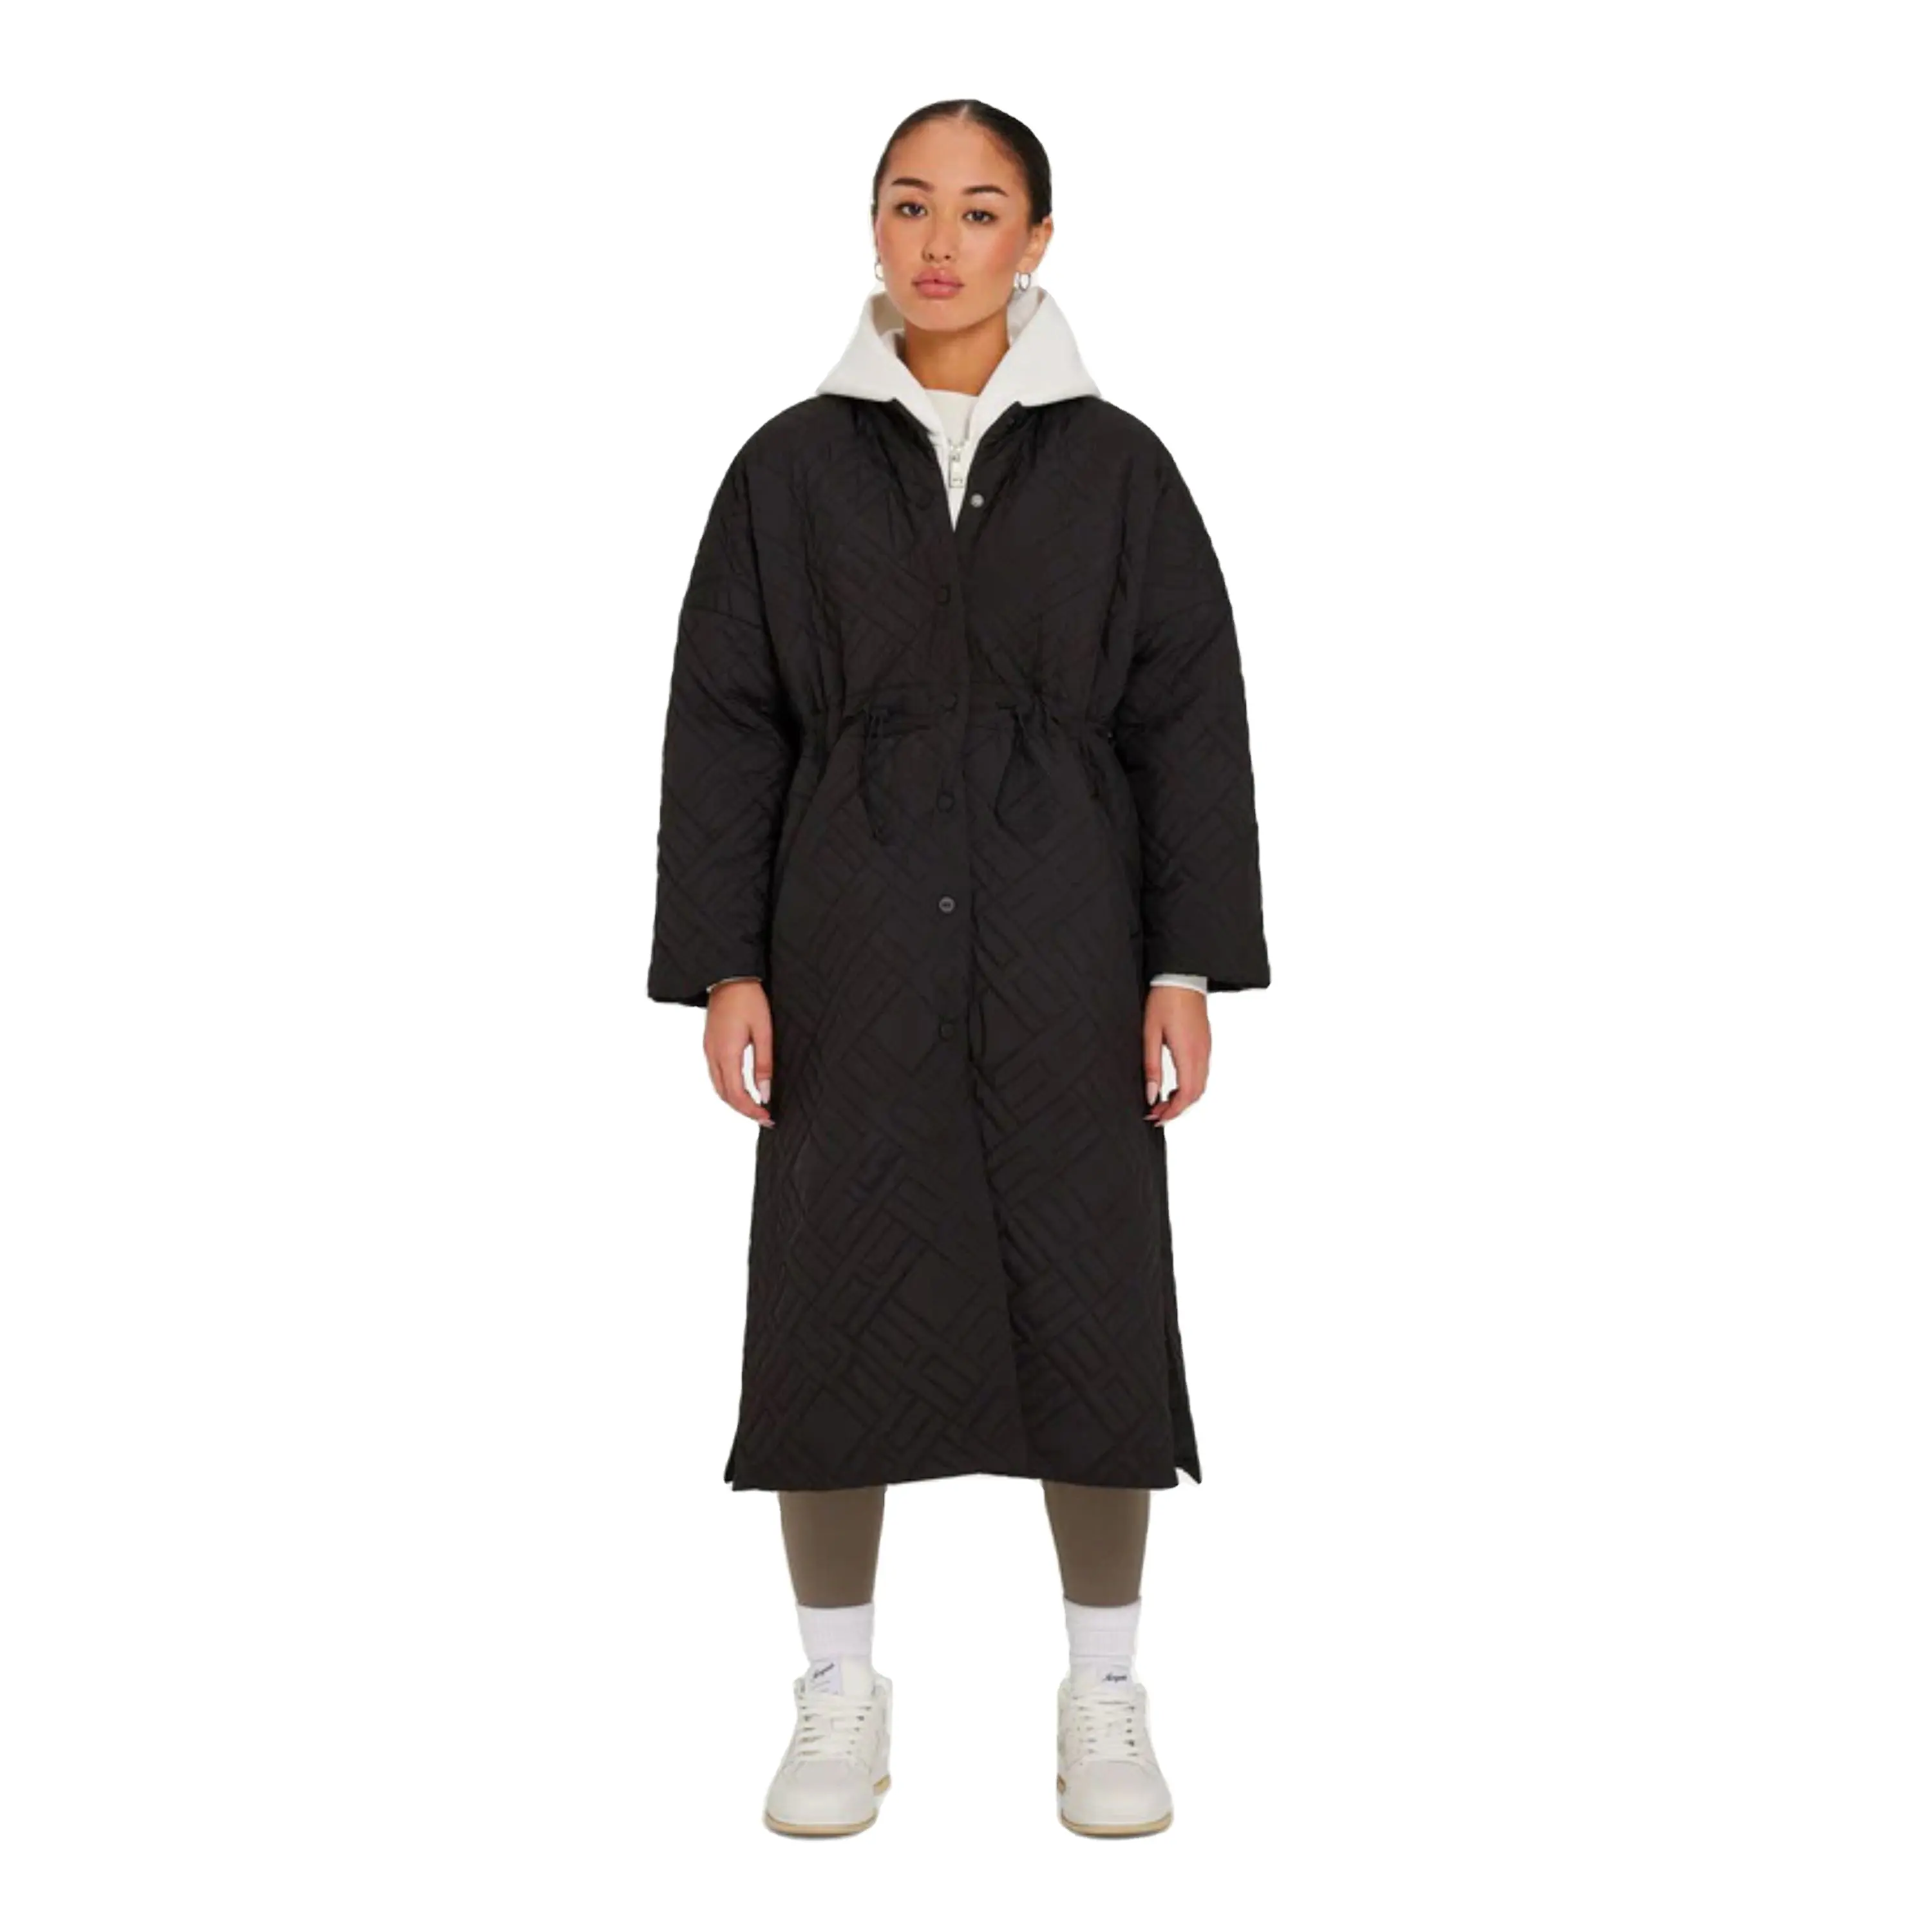 फैशन गर्म चमकदार गद्देदार पफर जैकेट काला लघु महिला रजाई बना हुआ कोट पफर कोट